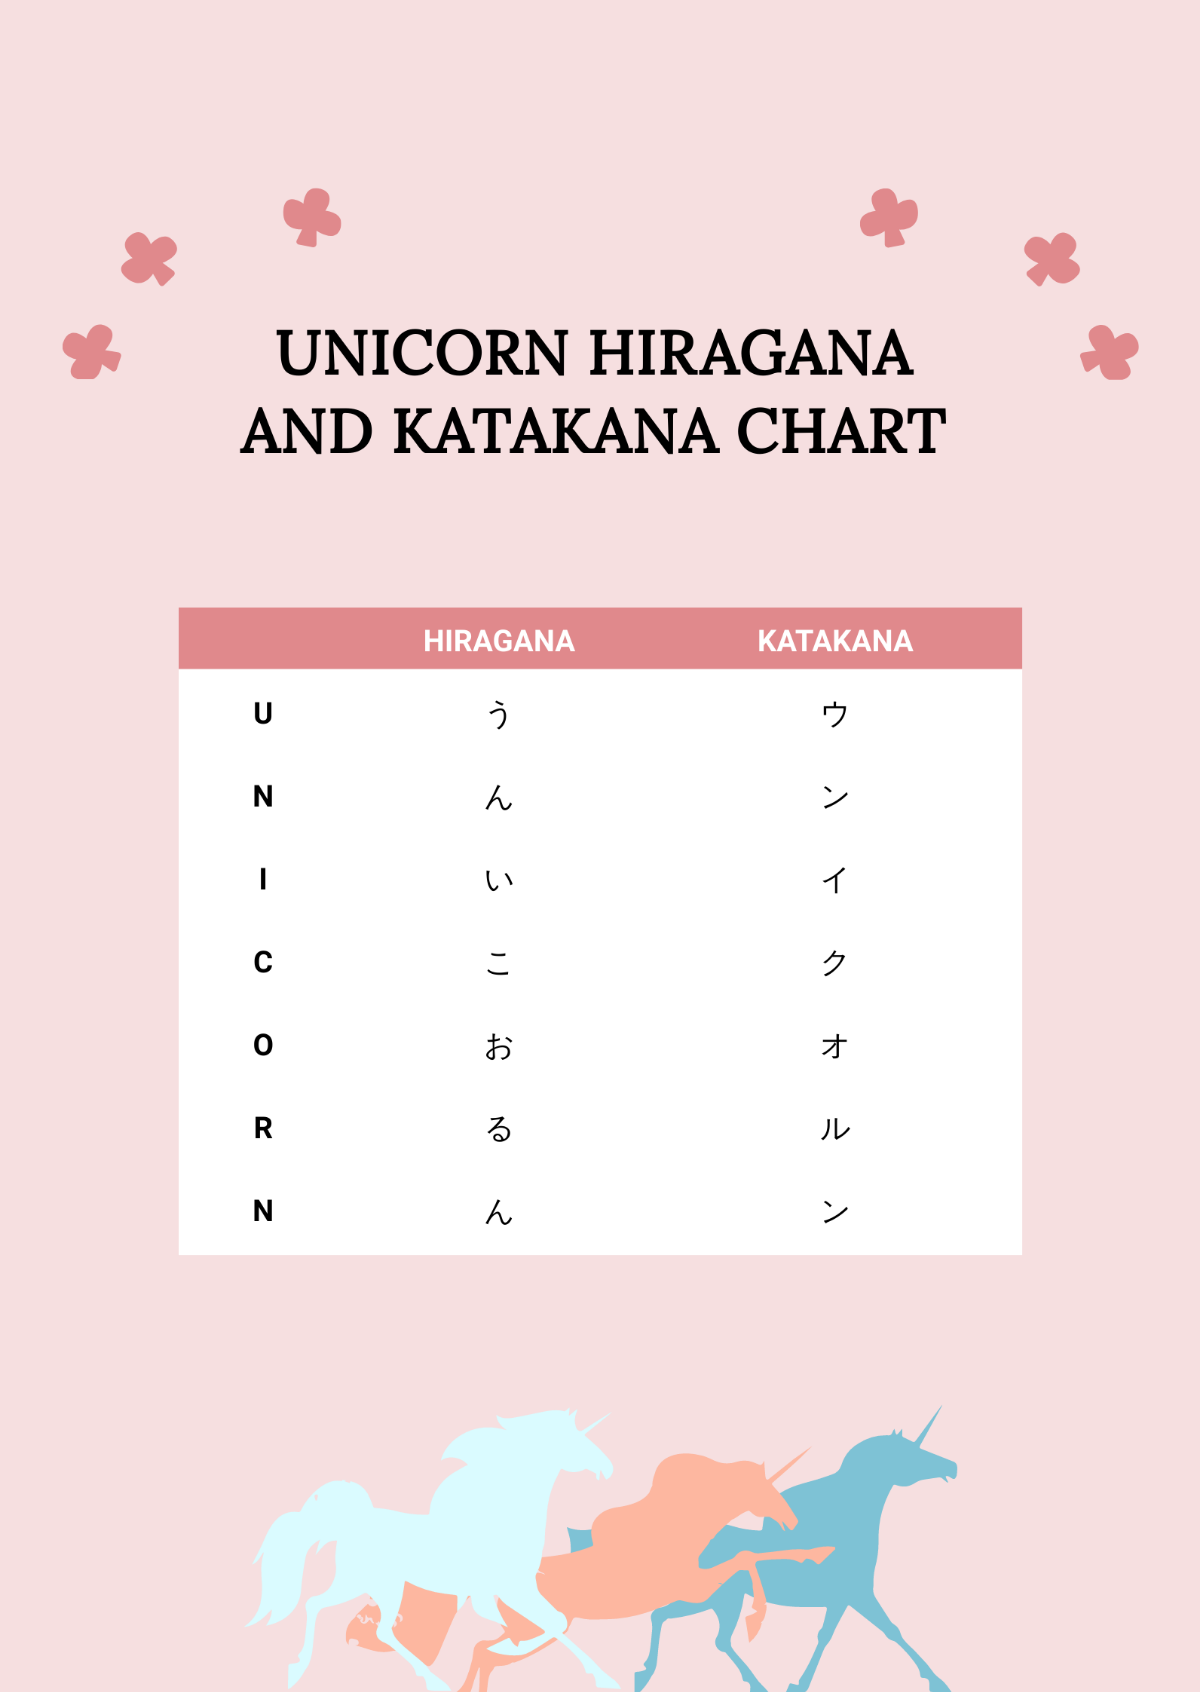 Unicorn Hiragana And Katakana Chart Template